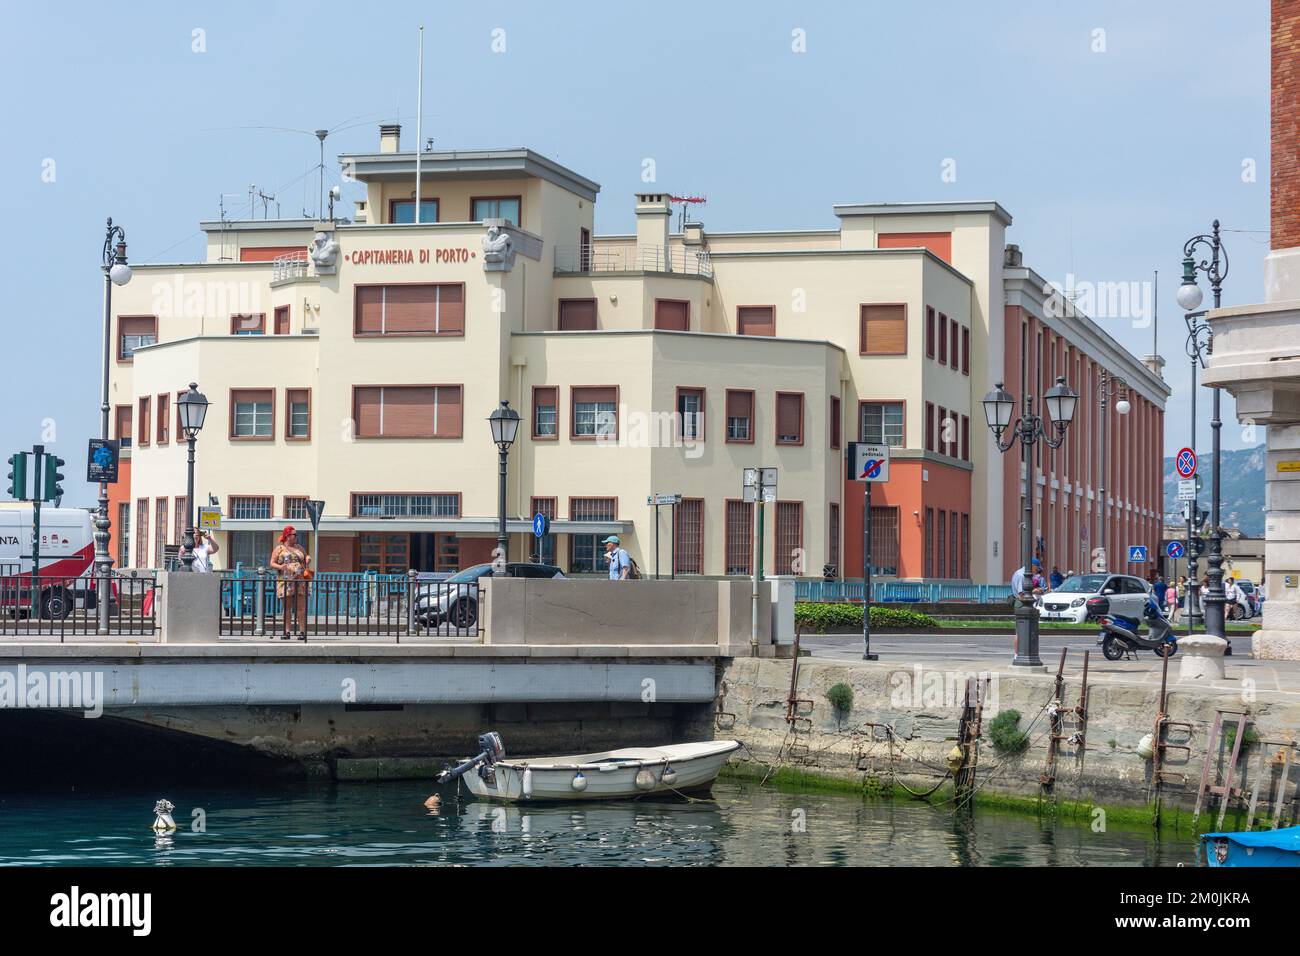 Edificio delle autorità portuali (Capitaneria di Porto) dal Canal Grande di Trieste, Riva tre Novembre, Trieste, Regione Friuli Venezia Giulia, Italia Foto Stock